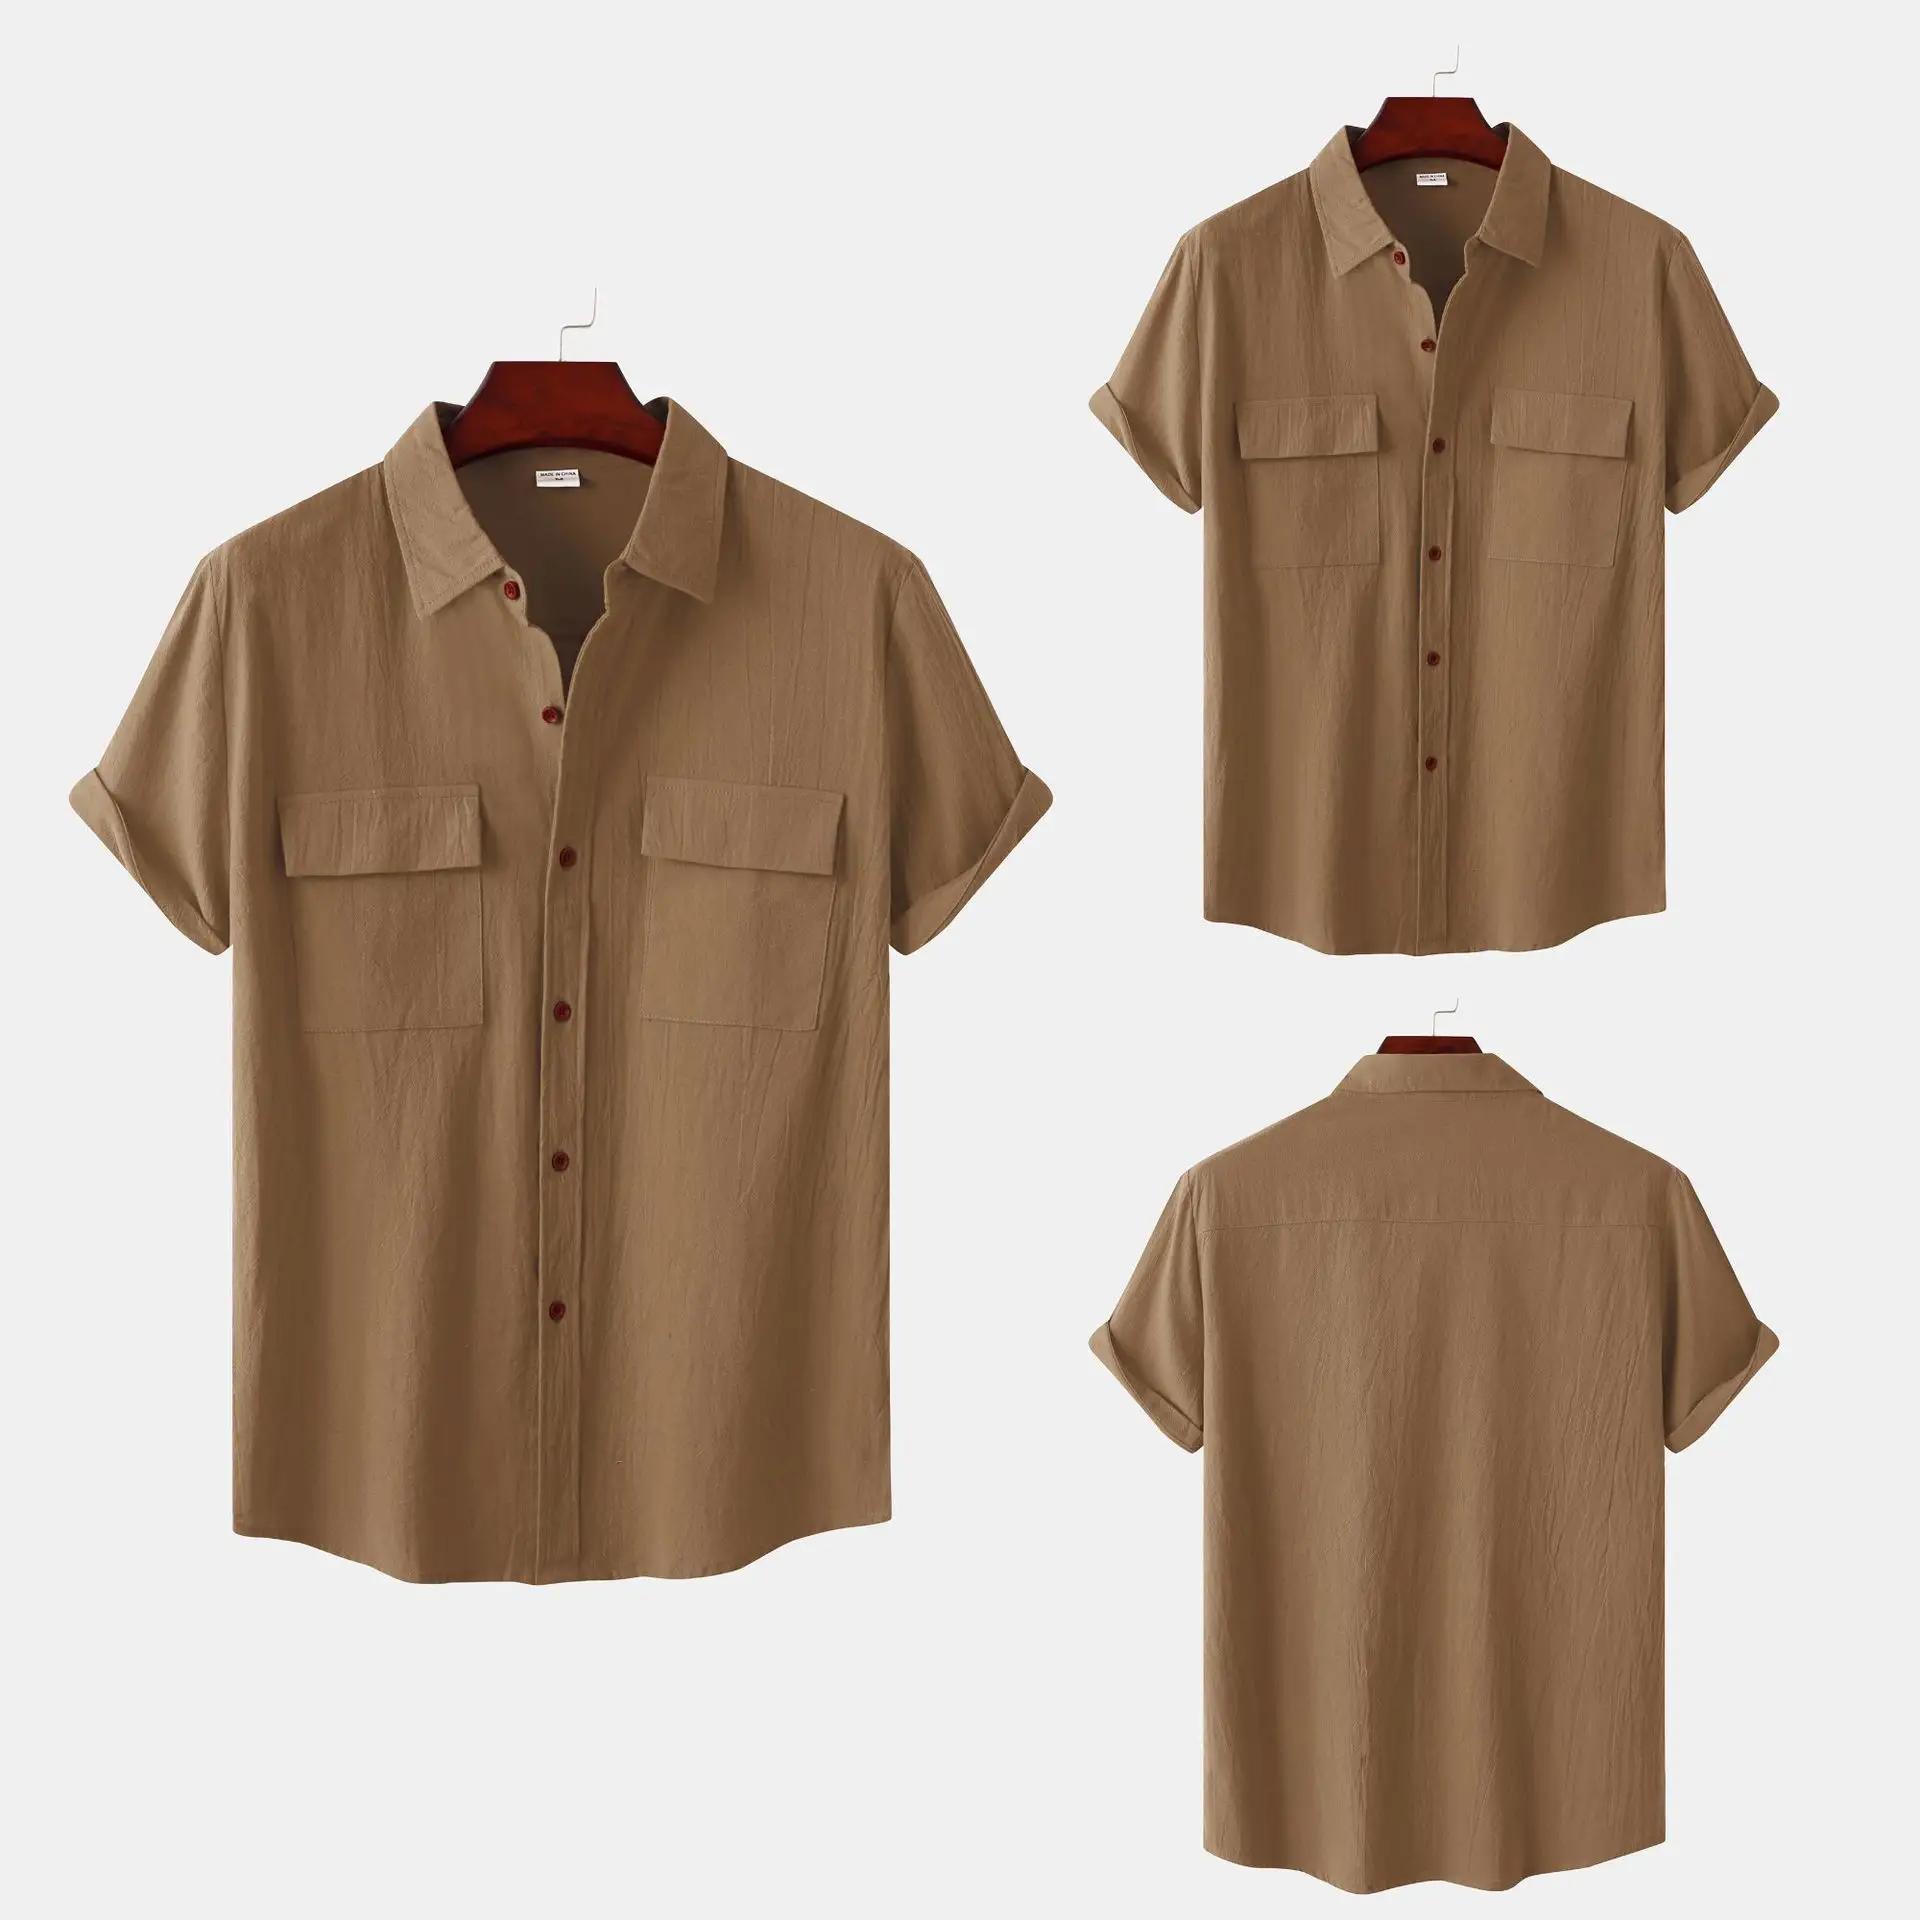 हॉट सेलिंग समर बटन कूल शर्ट्स कैजुअल स्क्वायर नेक टॉप कॉटन मेन अप न्यू लिनन शॉर्ट स्लीव शर्ट